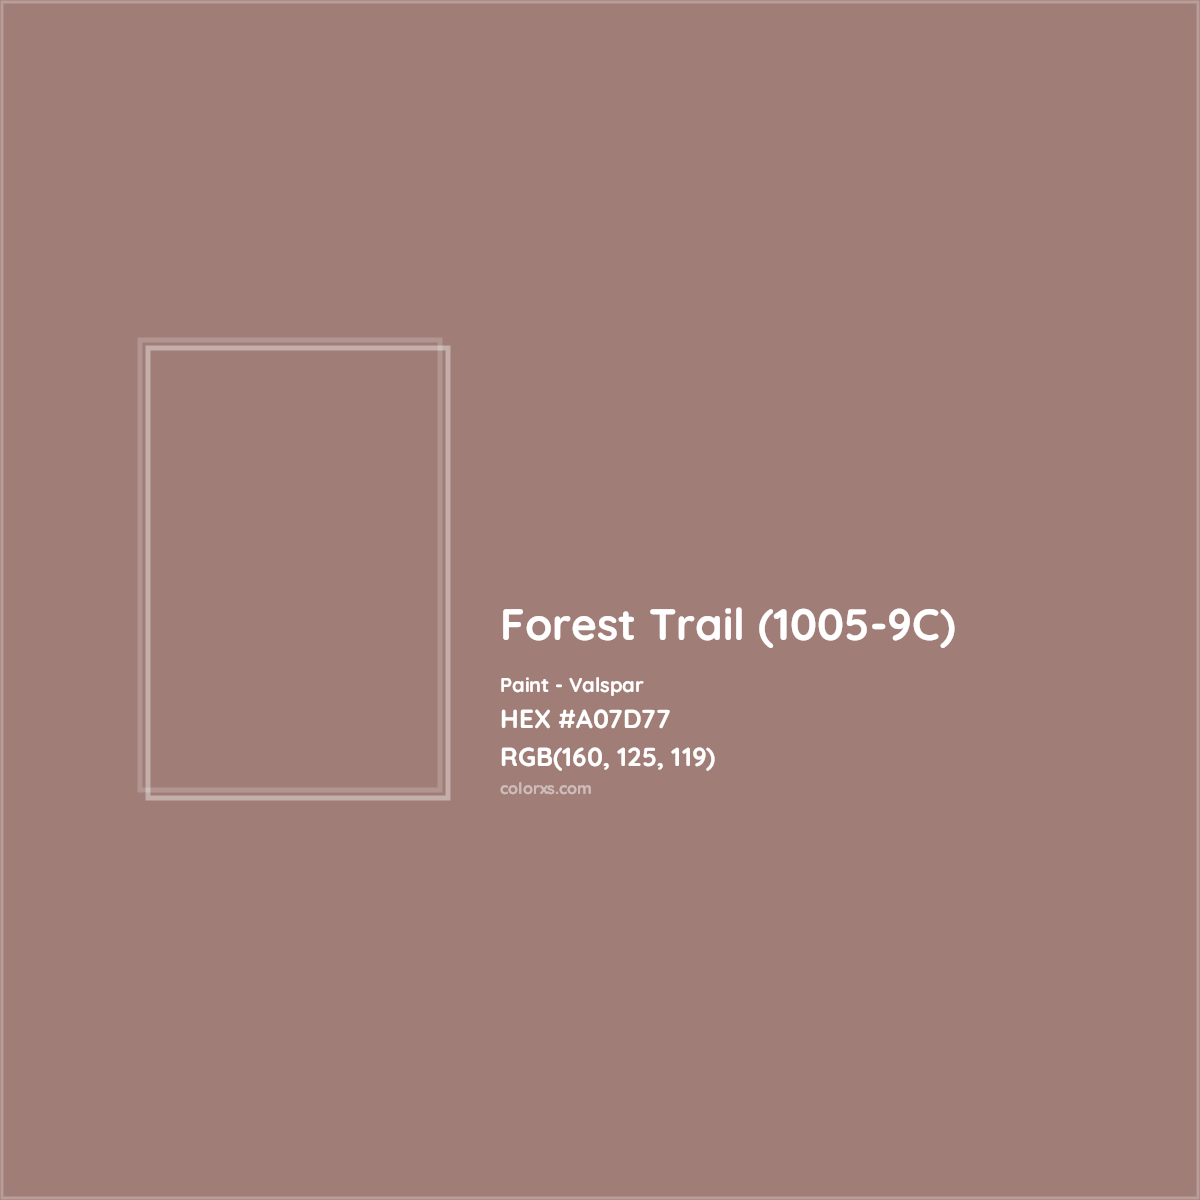 HEX #A07D77 Forest Trail (1005-9C) Paint Valspar - Color Code